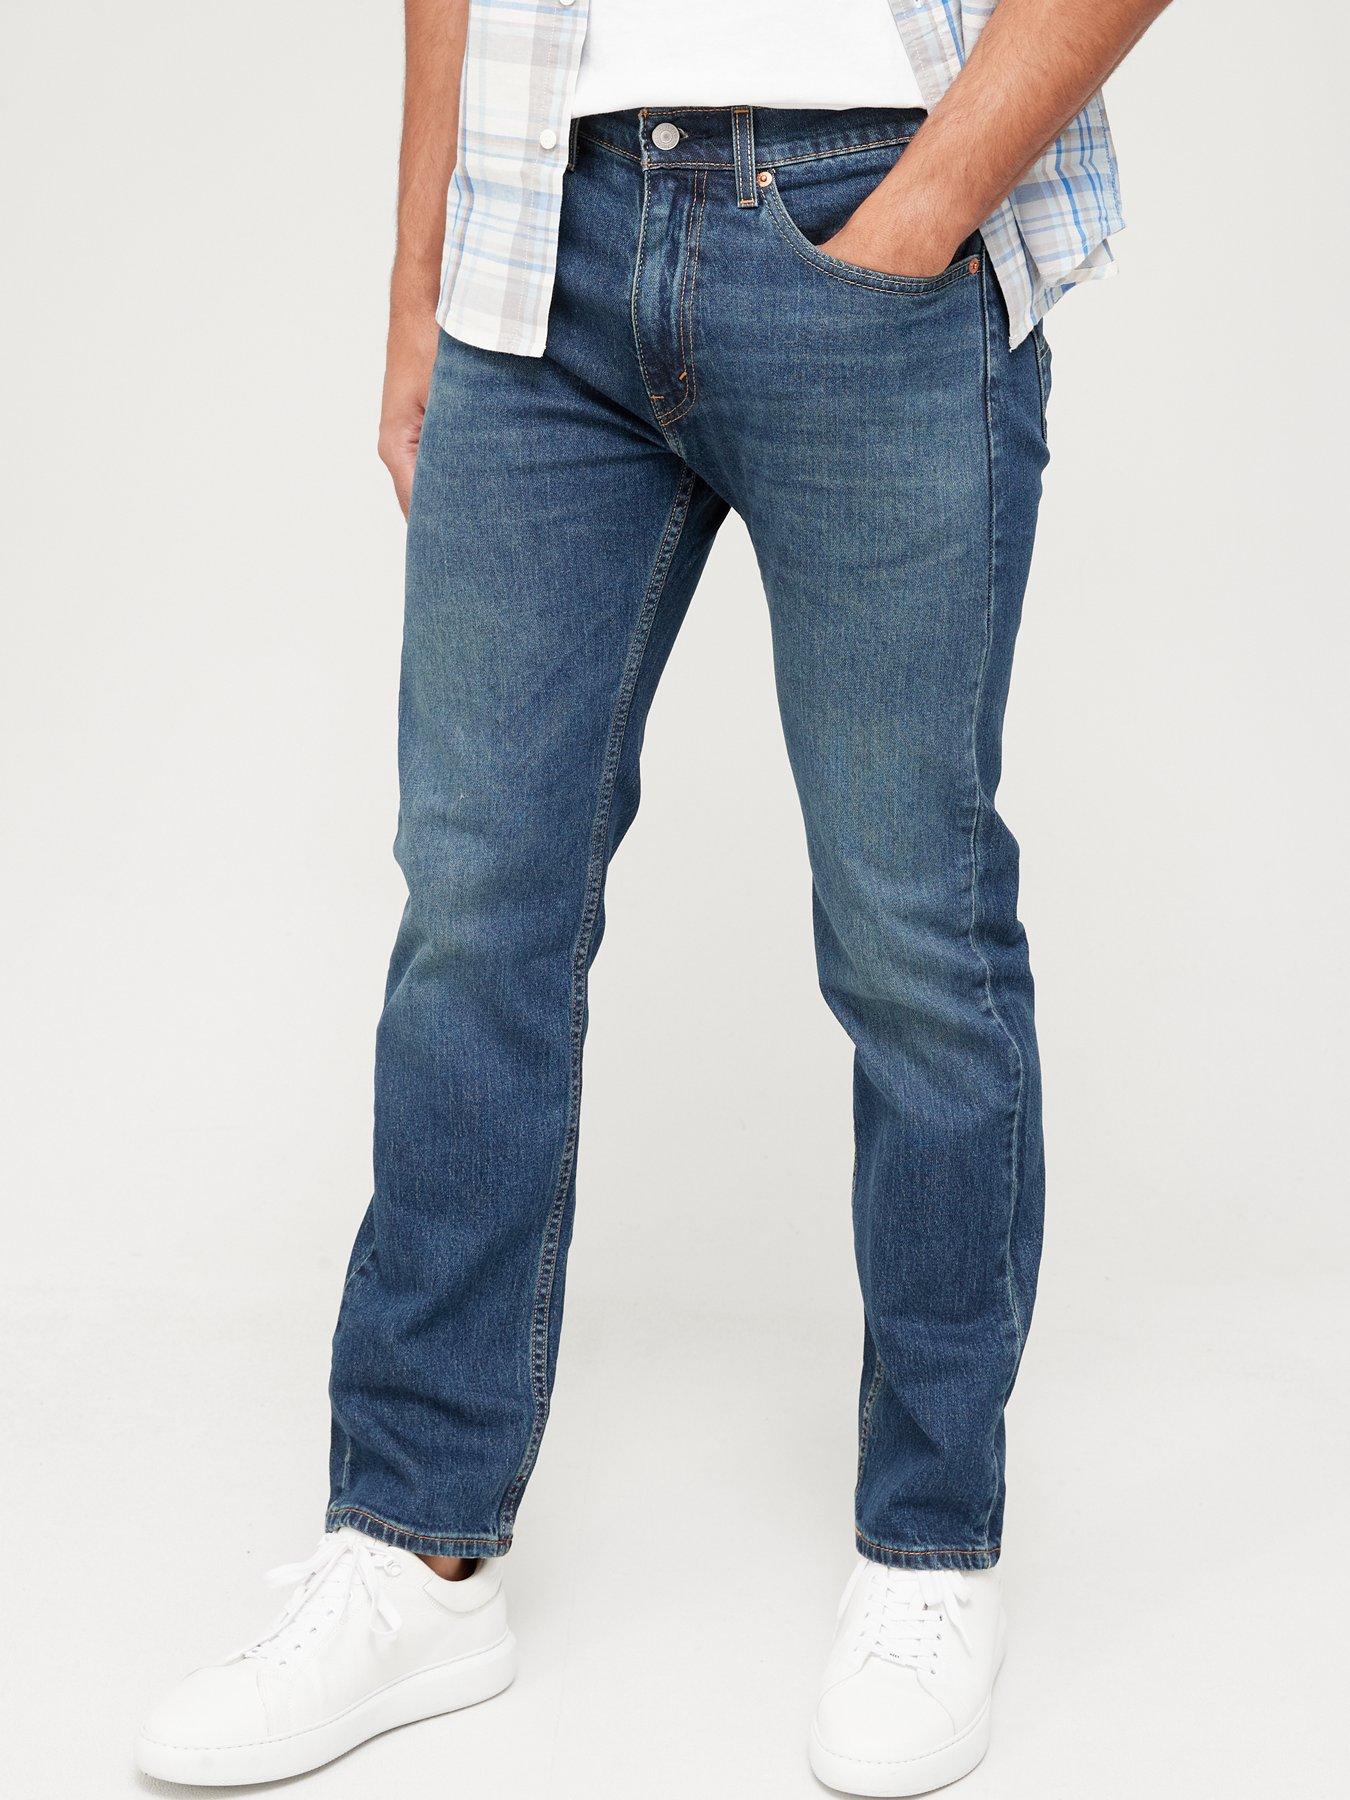 Levi's 505 Regular Fit Jeans - Sunset Down - Dark Blue, Dark Blue, Size 32, Inside Leg Regular, Men